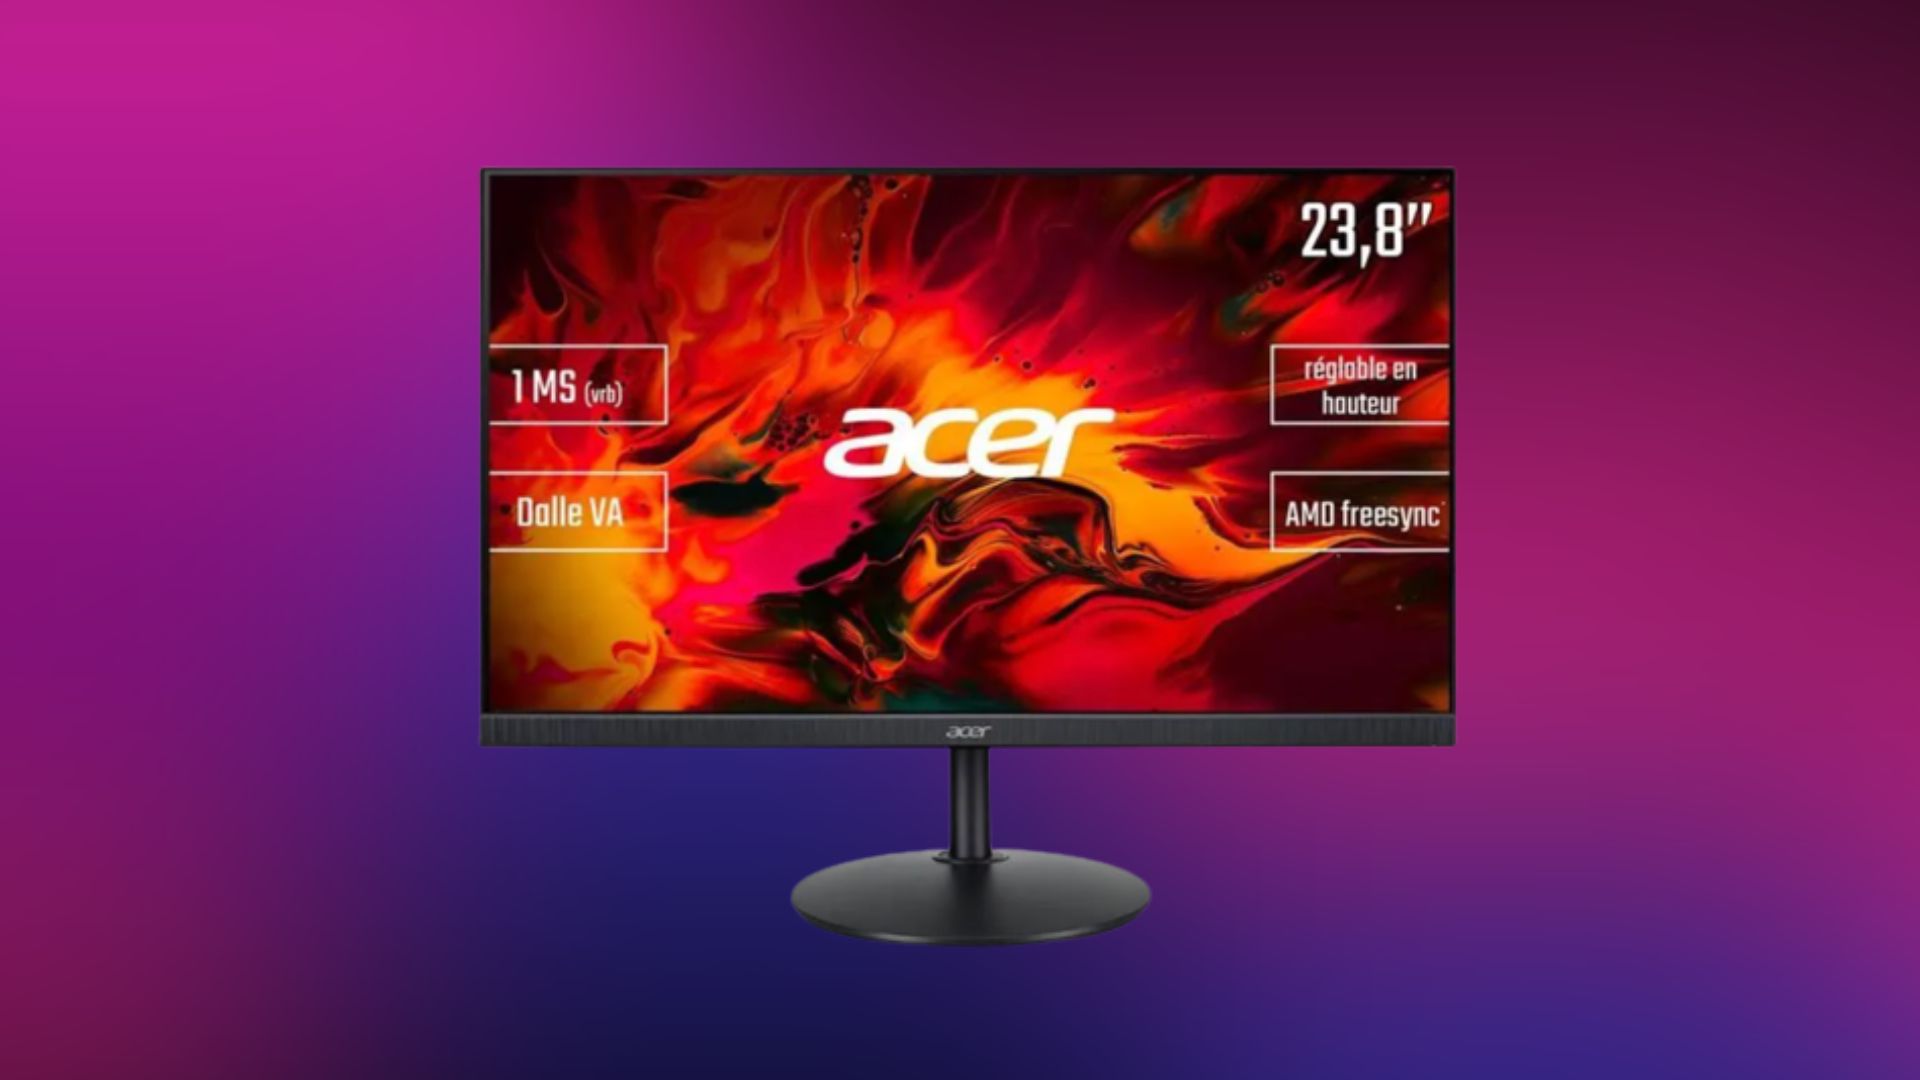 Cet écran PC Acer (24, 75 Hz, 1 ms) ne dépasse pas les 90 euros